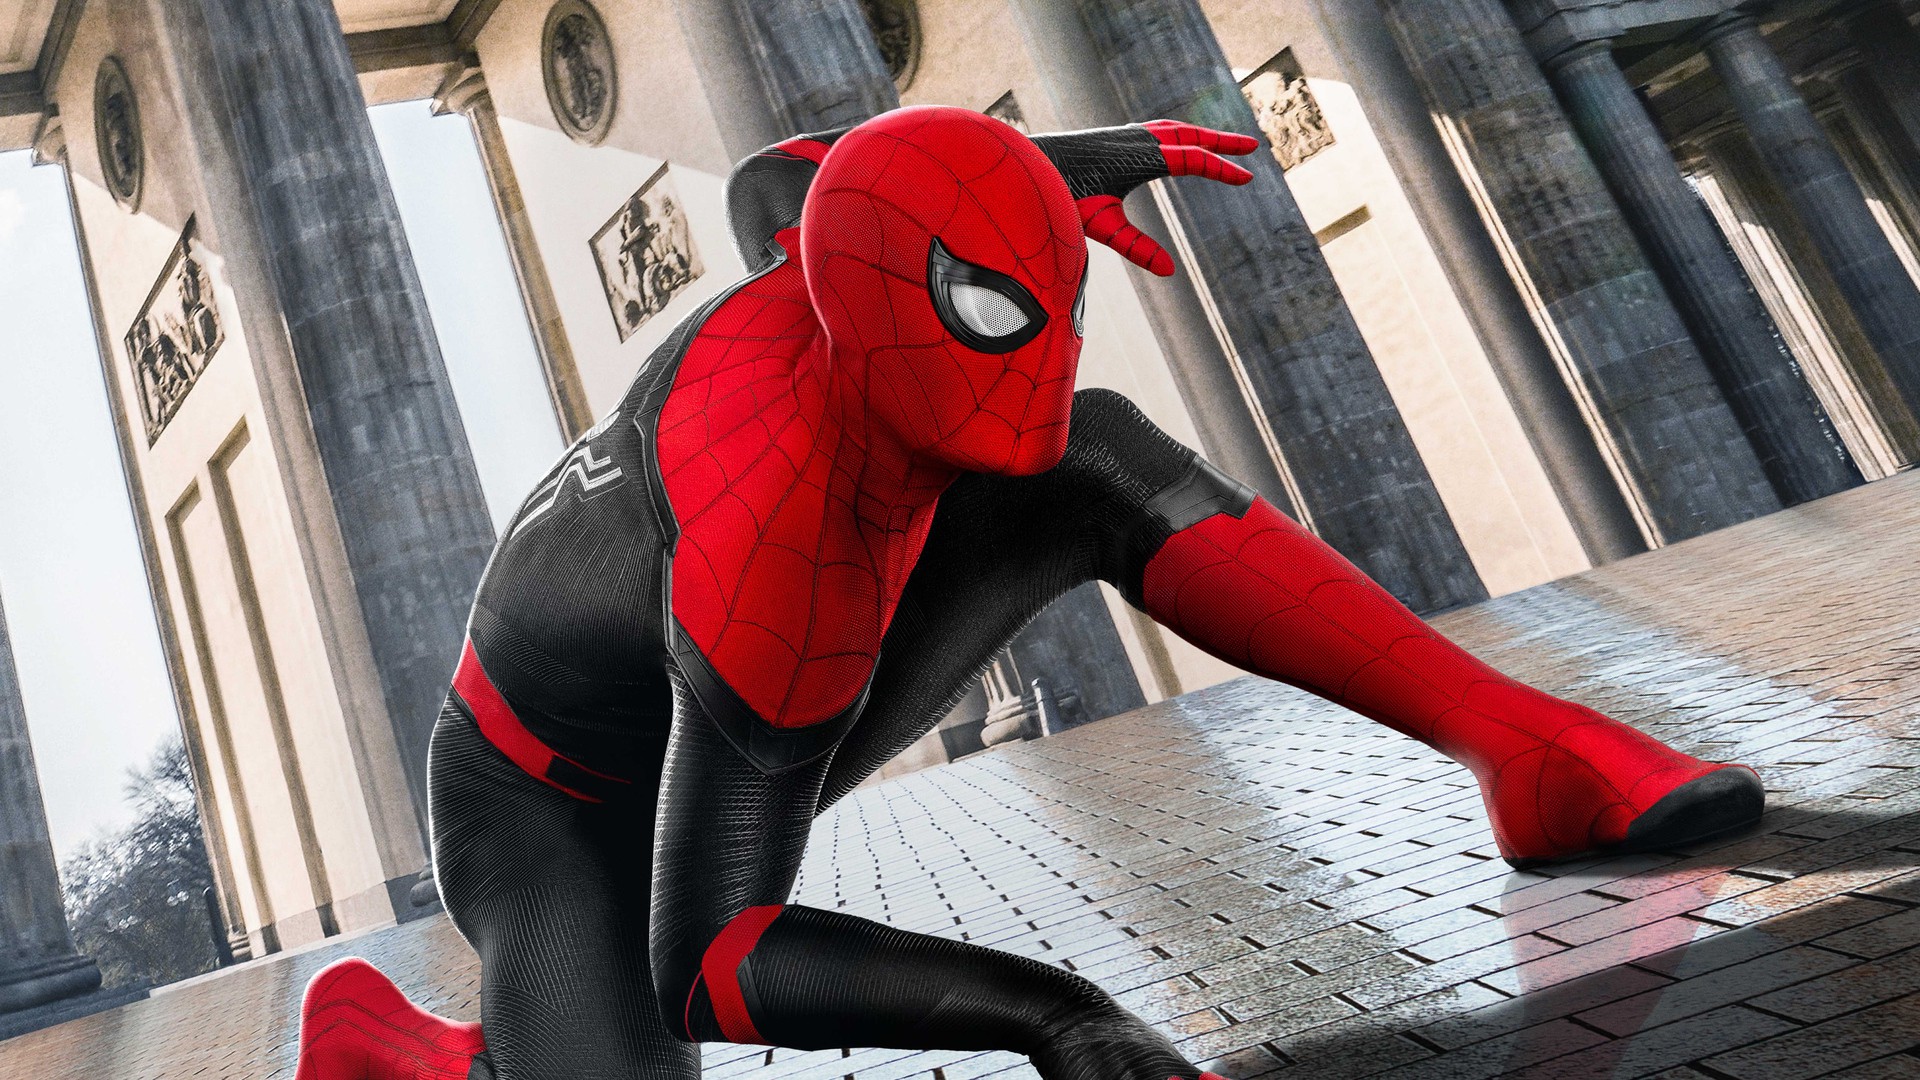 Trailer de Homem-Aranha: Longe de Casa mostrou uniforme falso para esconder spoilers de Ultimato